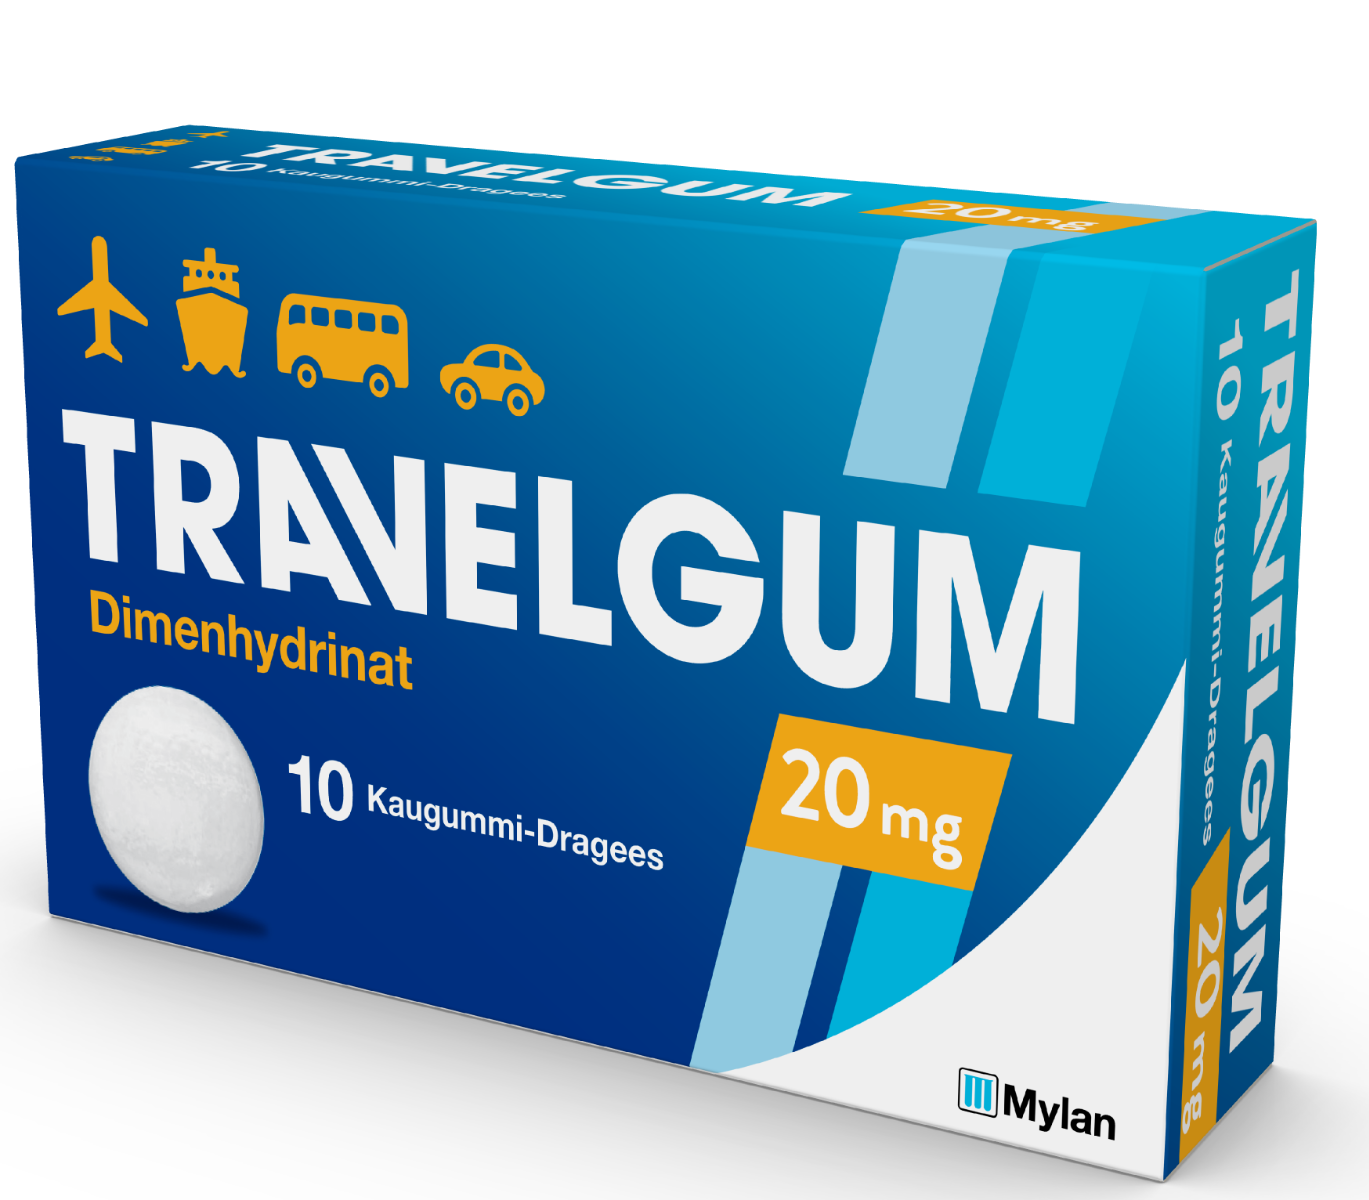 Abbildung Travelgum  20 mg - Kaugummi-Dragees